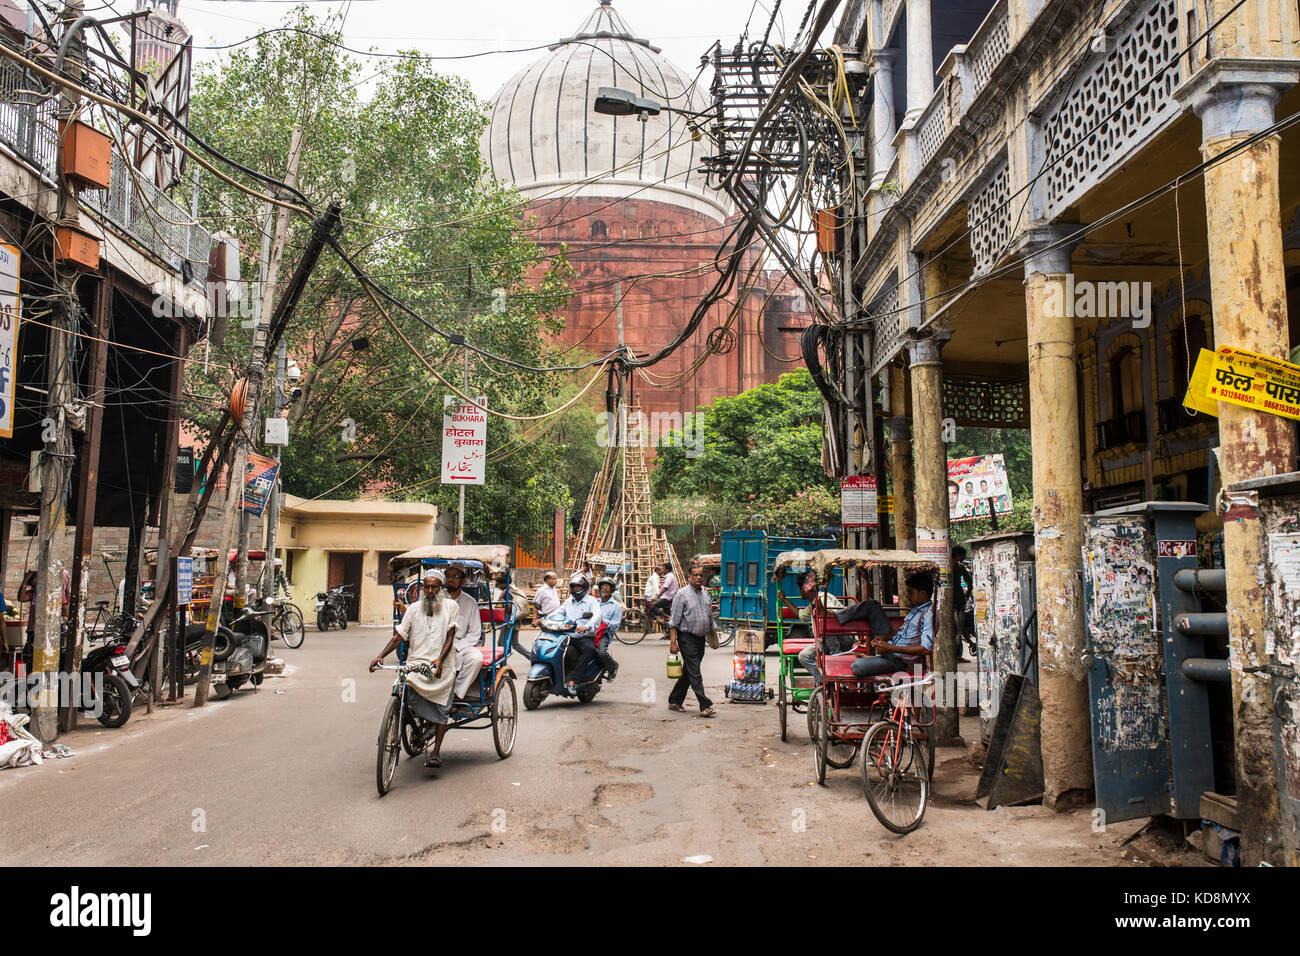 Chawri bazar road vicino al Jama Masjid moschea in background, Delhi, India Foto Stock